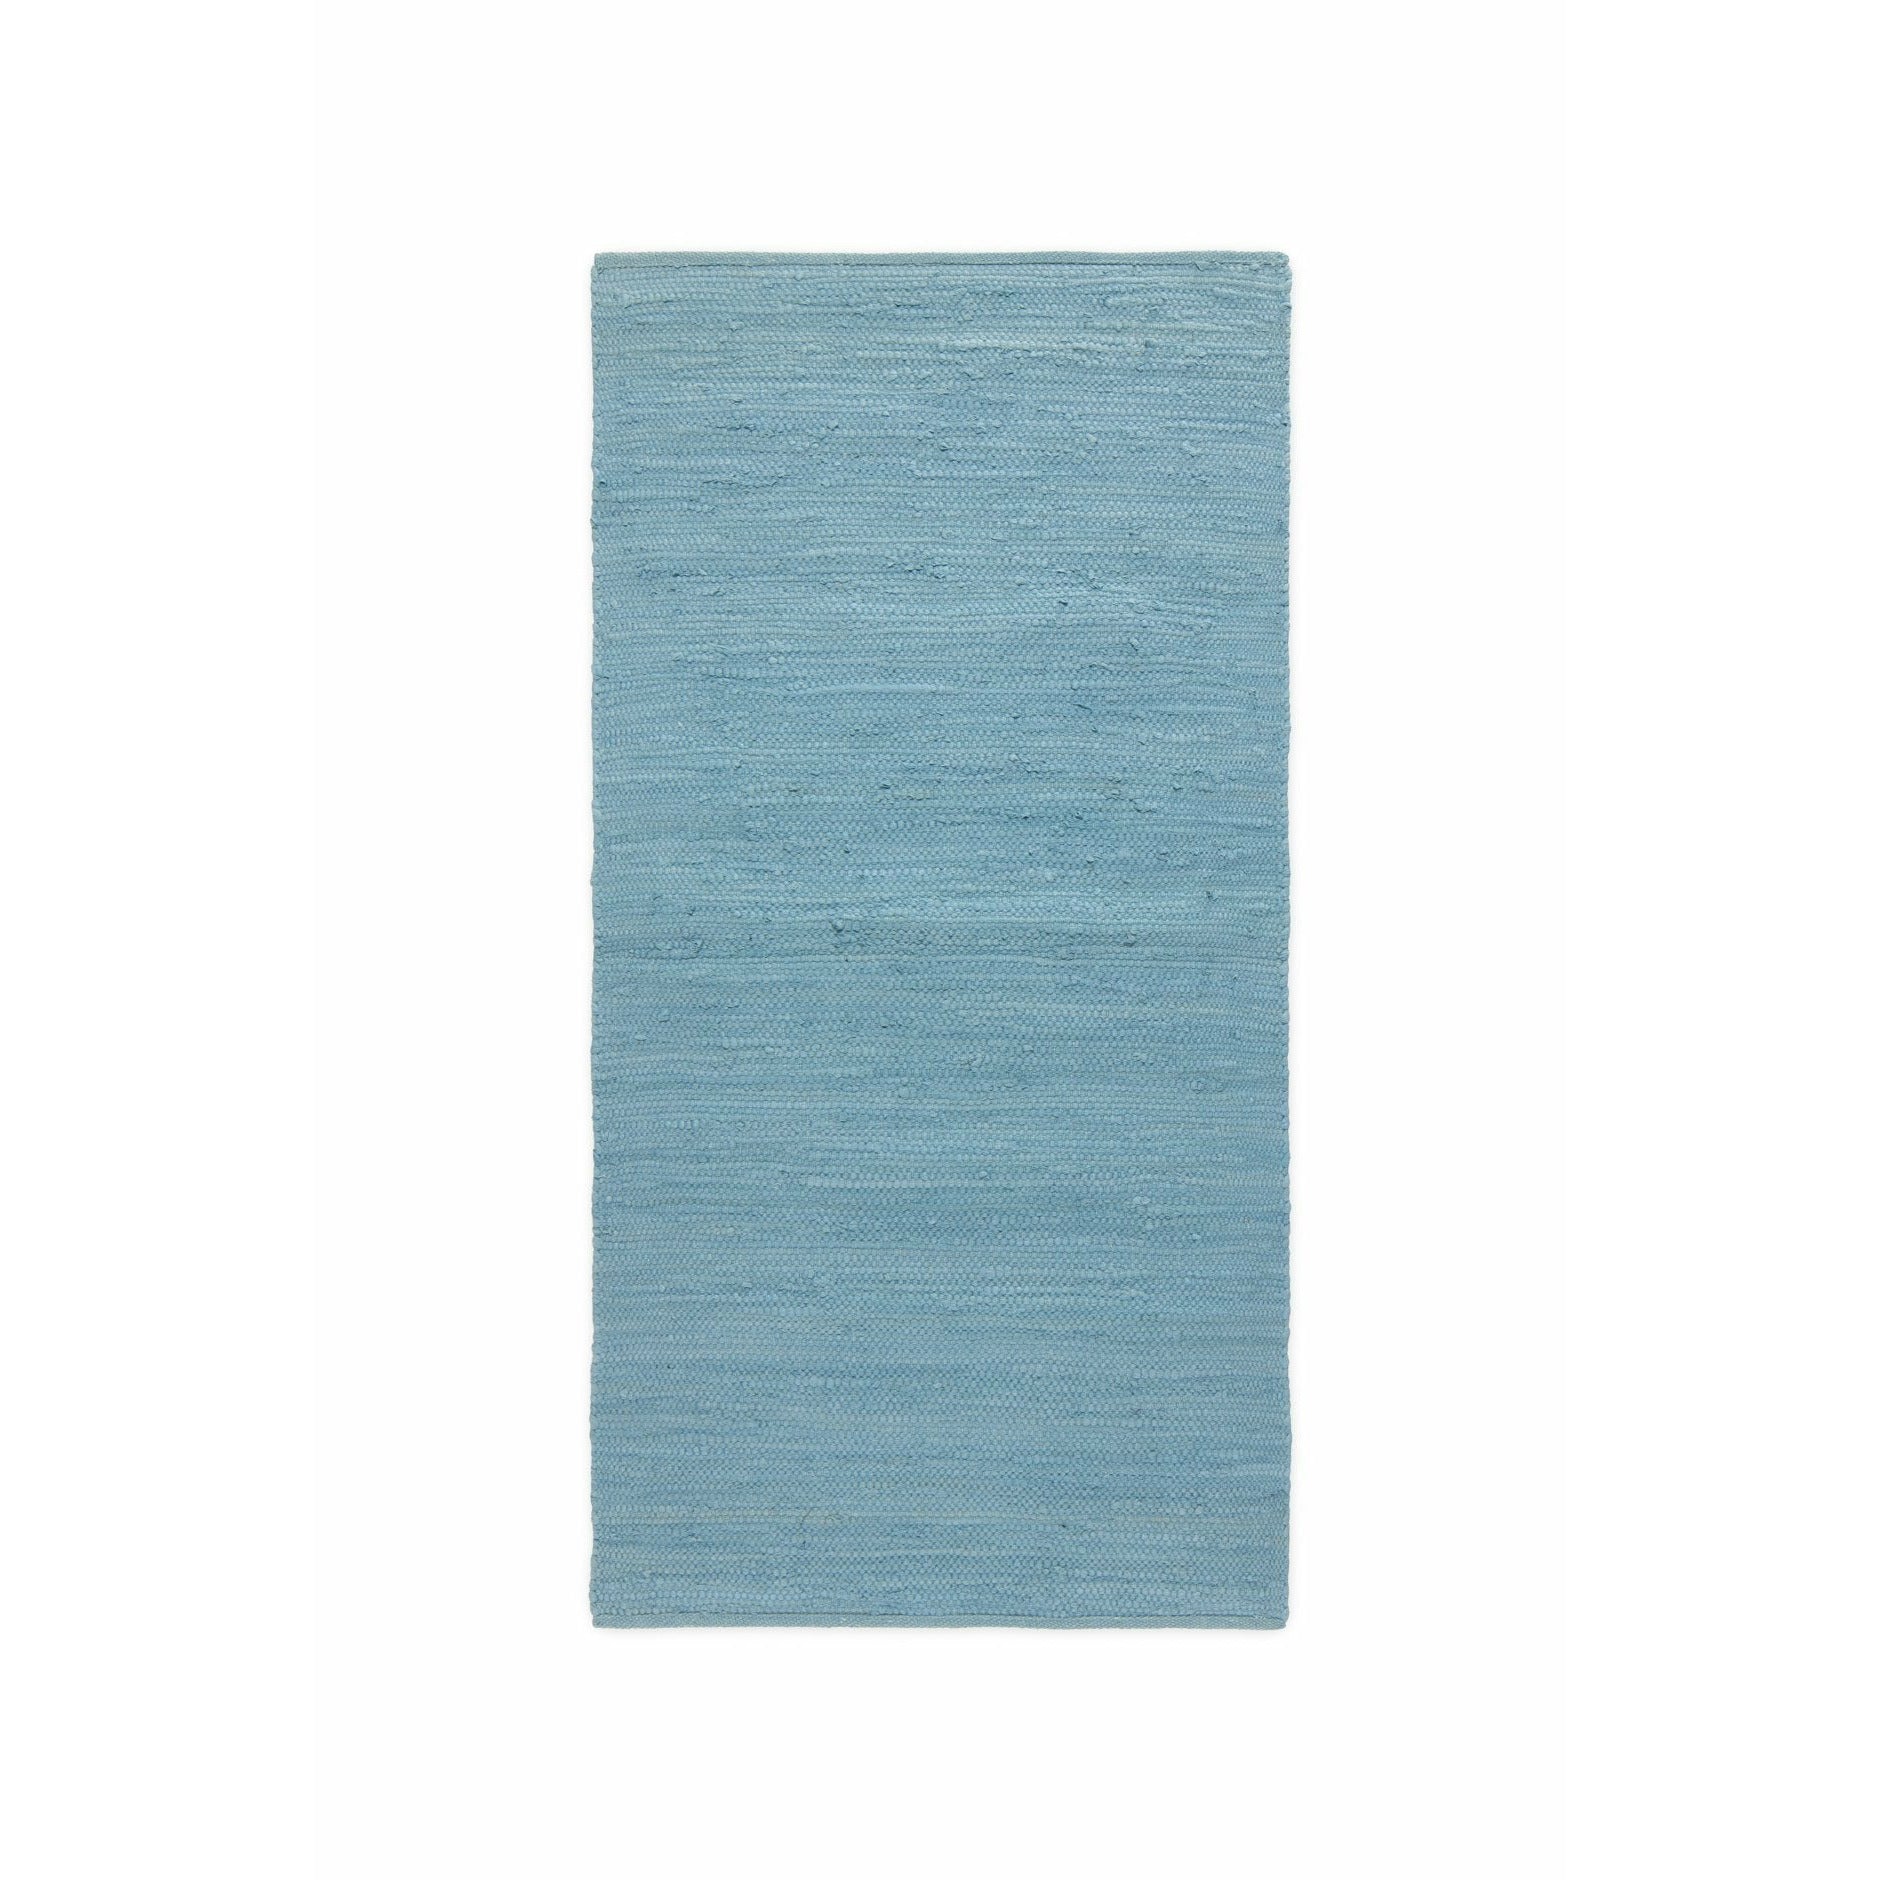 Rug Solid Bomullsmattan evigheten blå, 75 x 200 cm